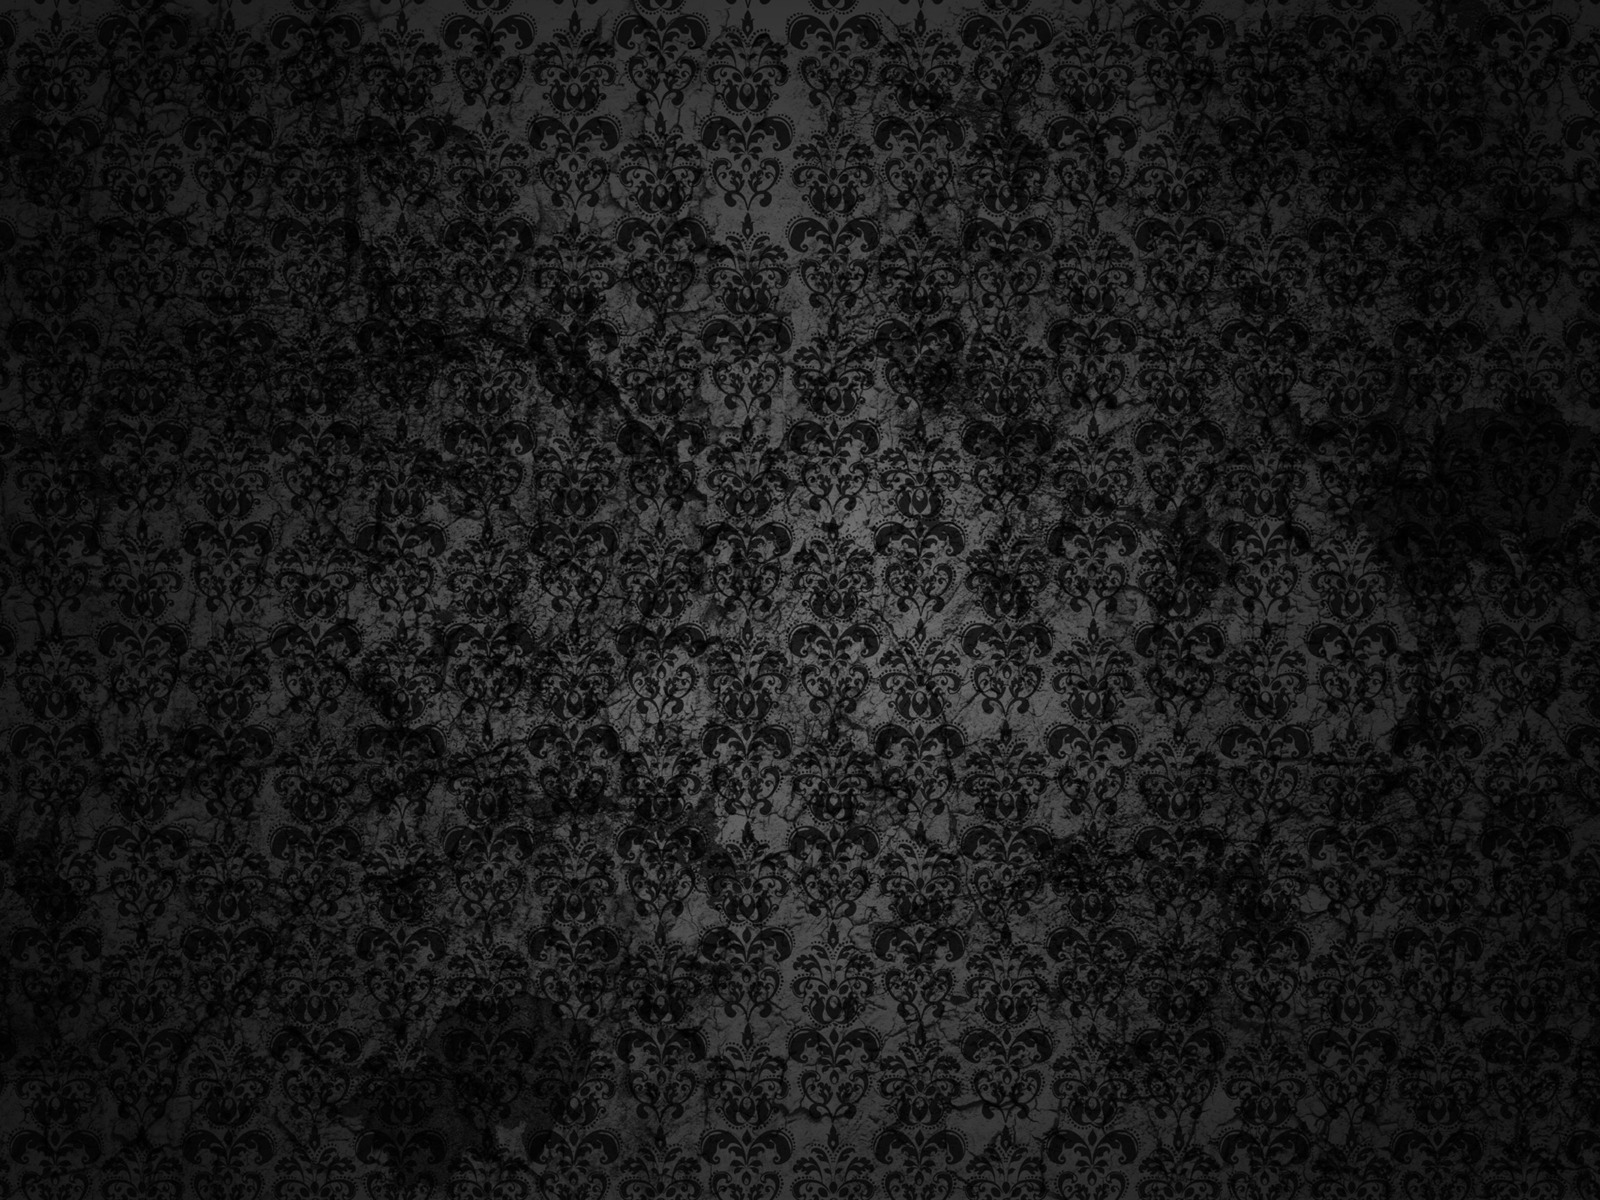 Black Floral Grunge for 1600 x 1200 resolution